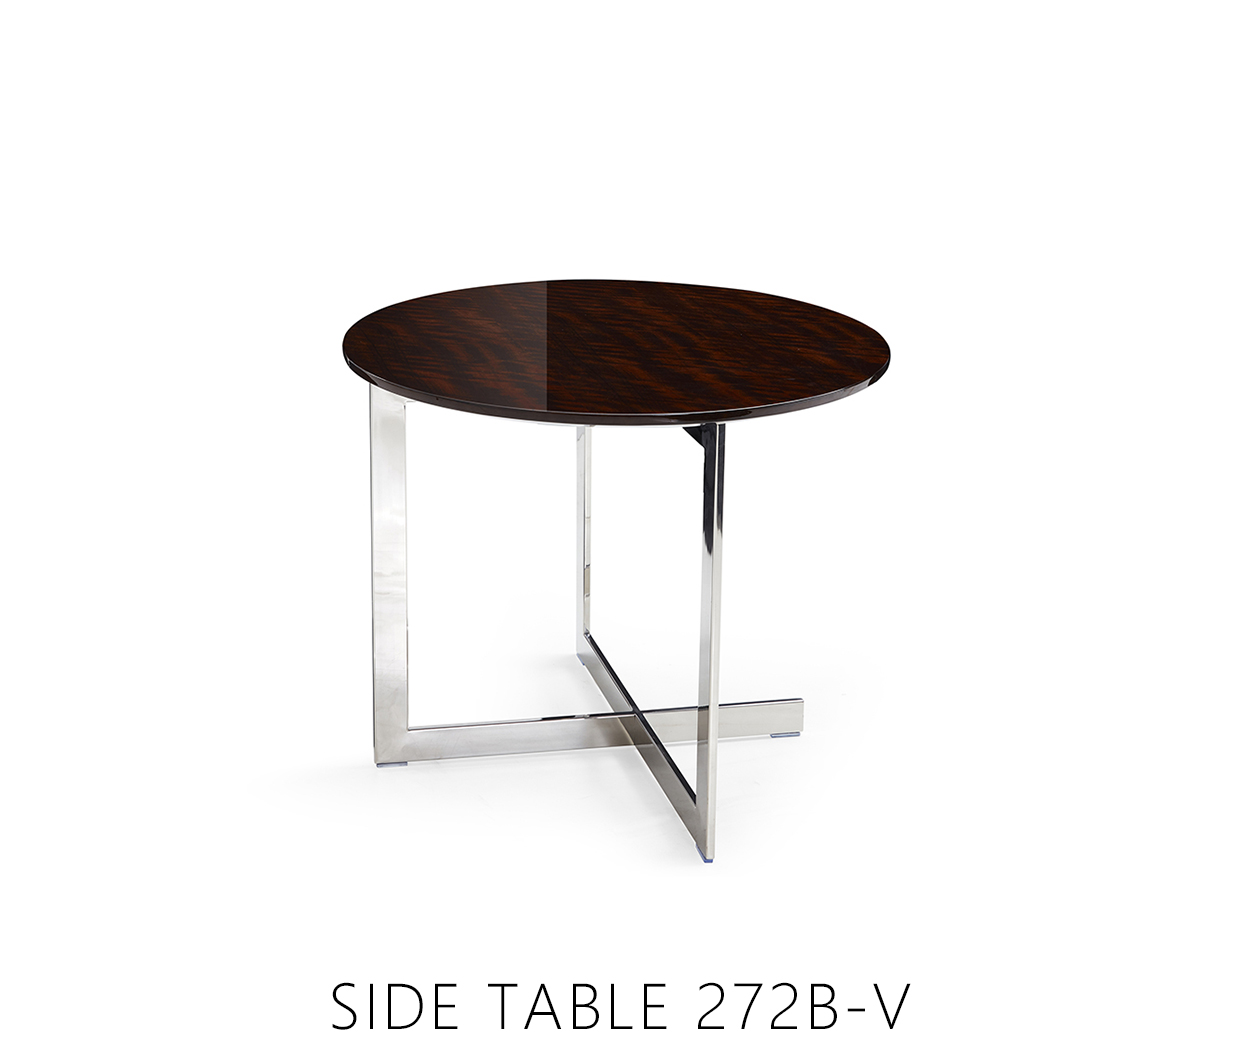 SIDE TABLE 272B-V